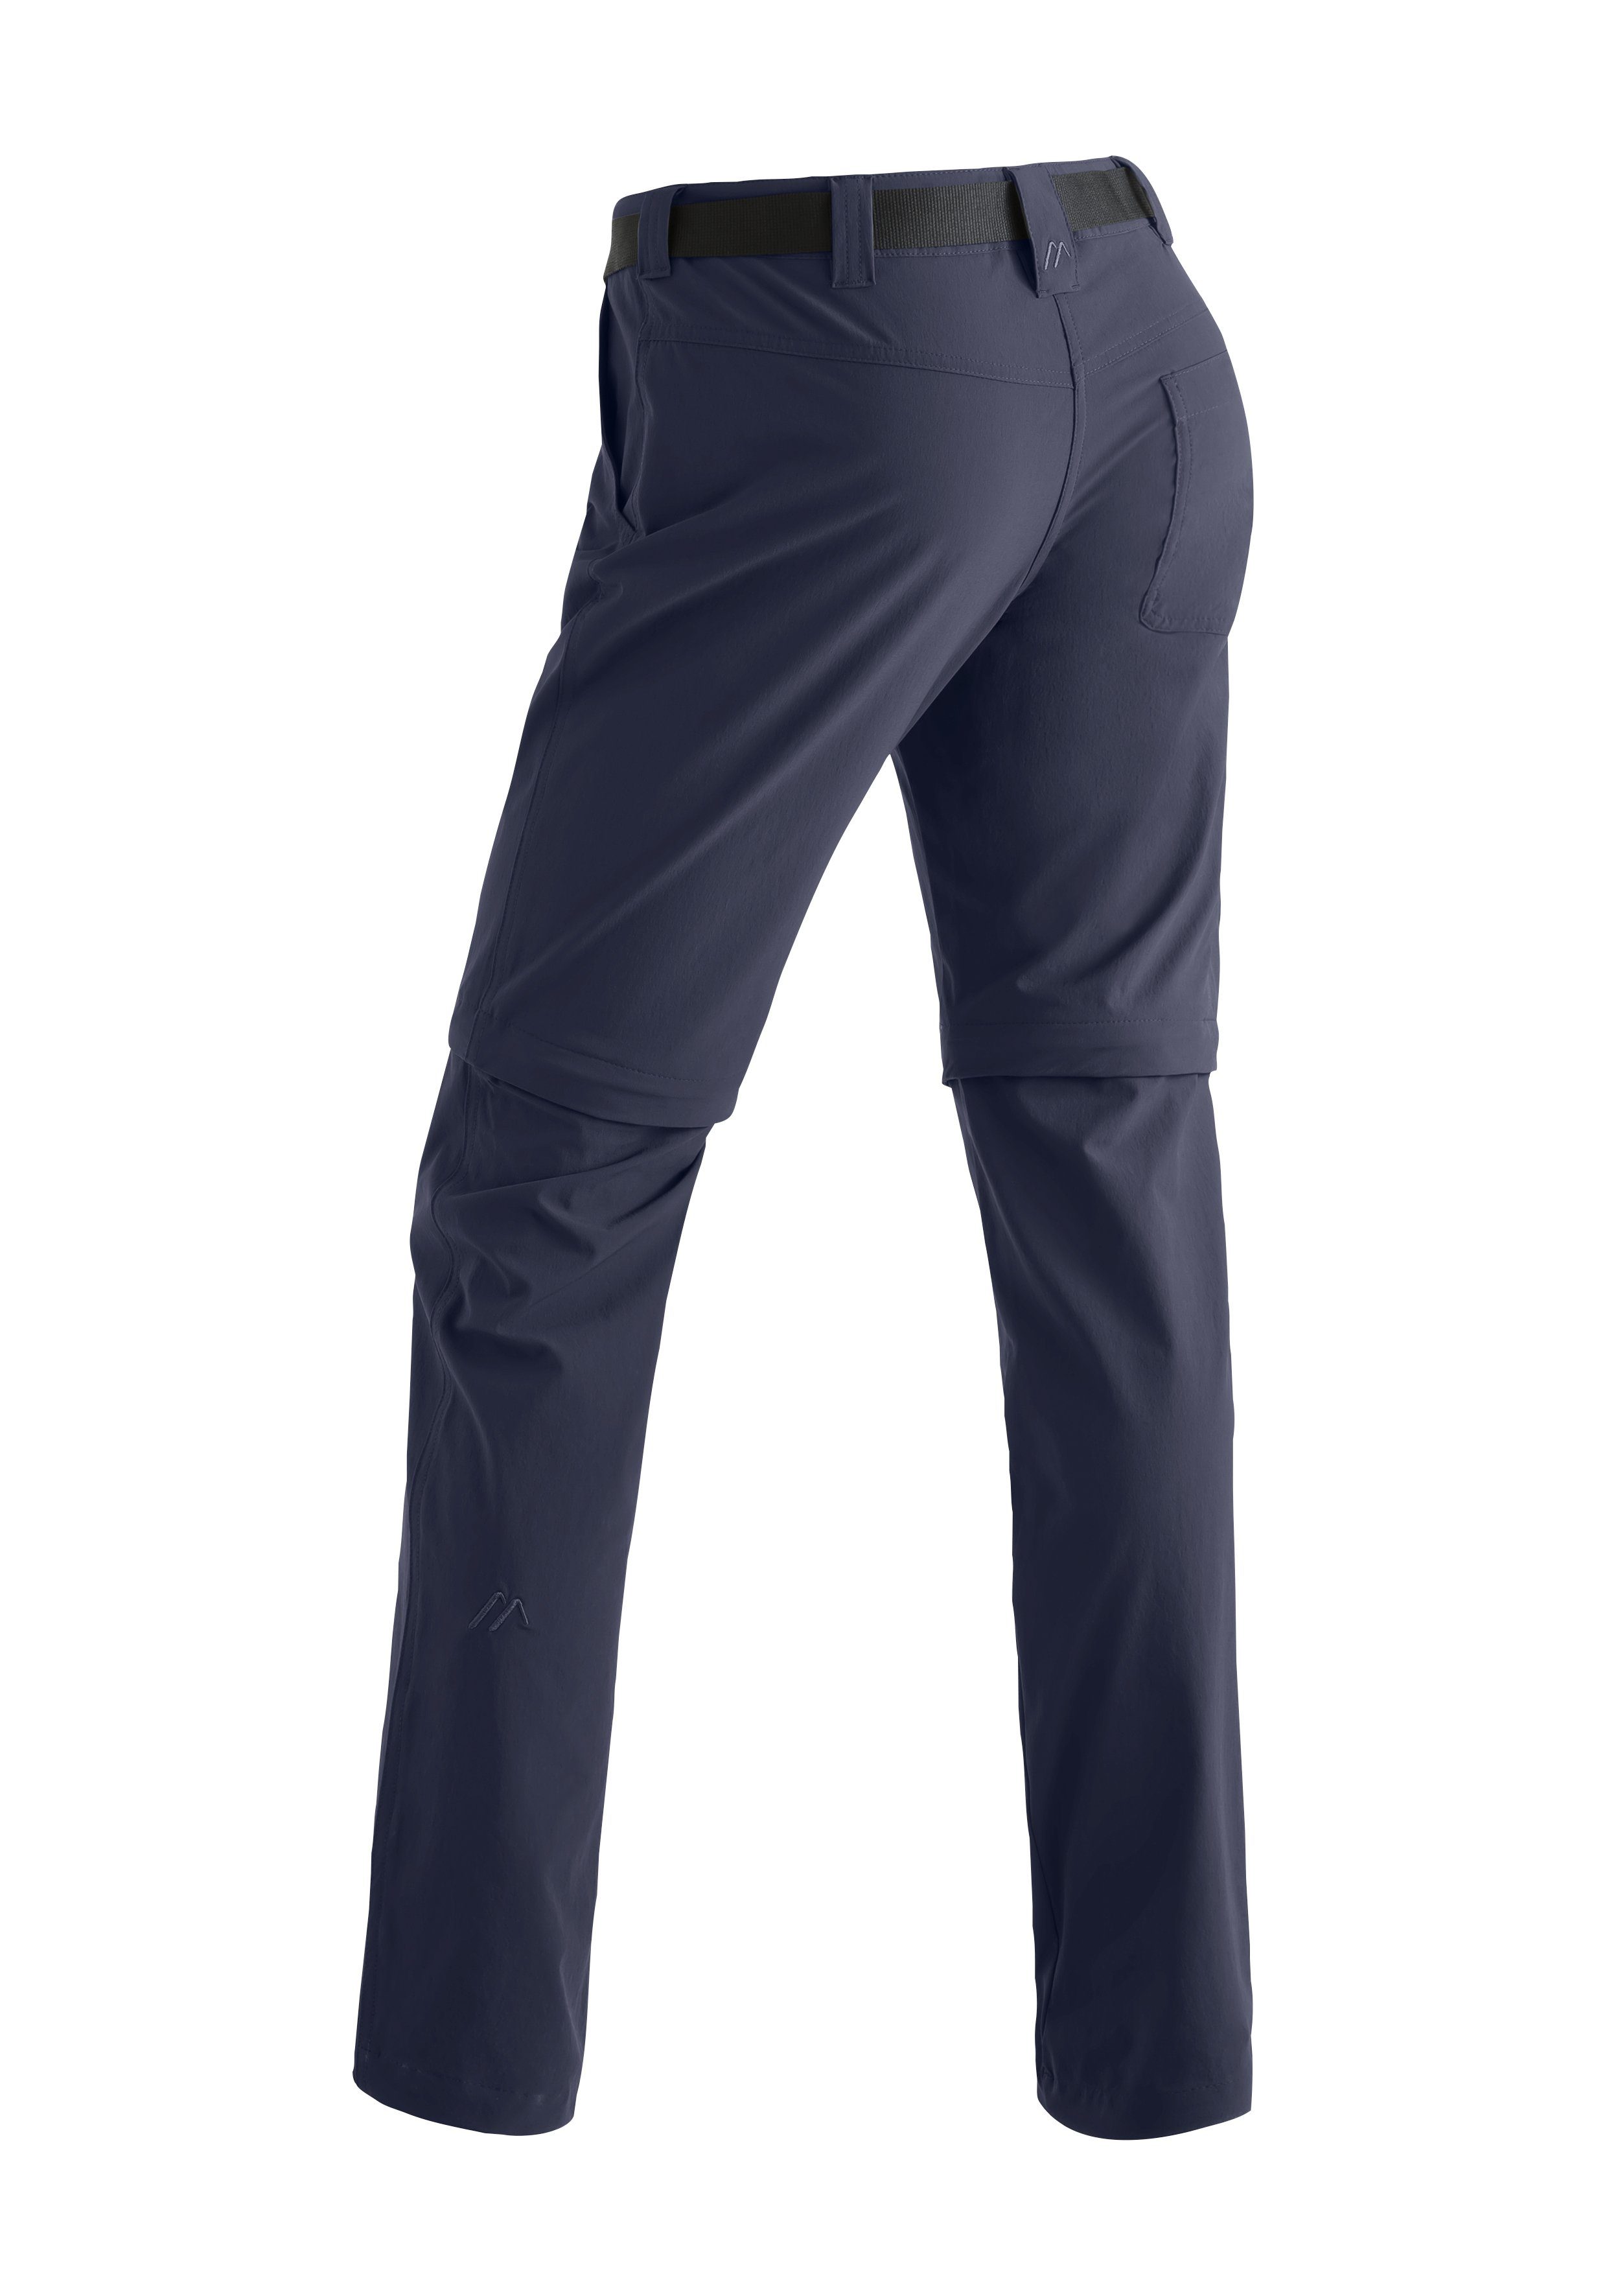 Funktionshose blau zip Damen atmungsaktive Maier zipp-off Wanderhose, slim Inara Sports Outdoor-Hose